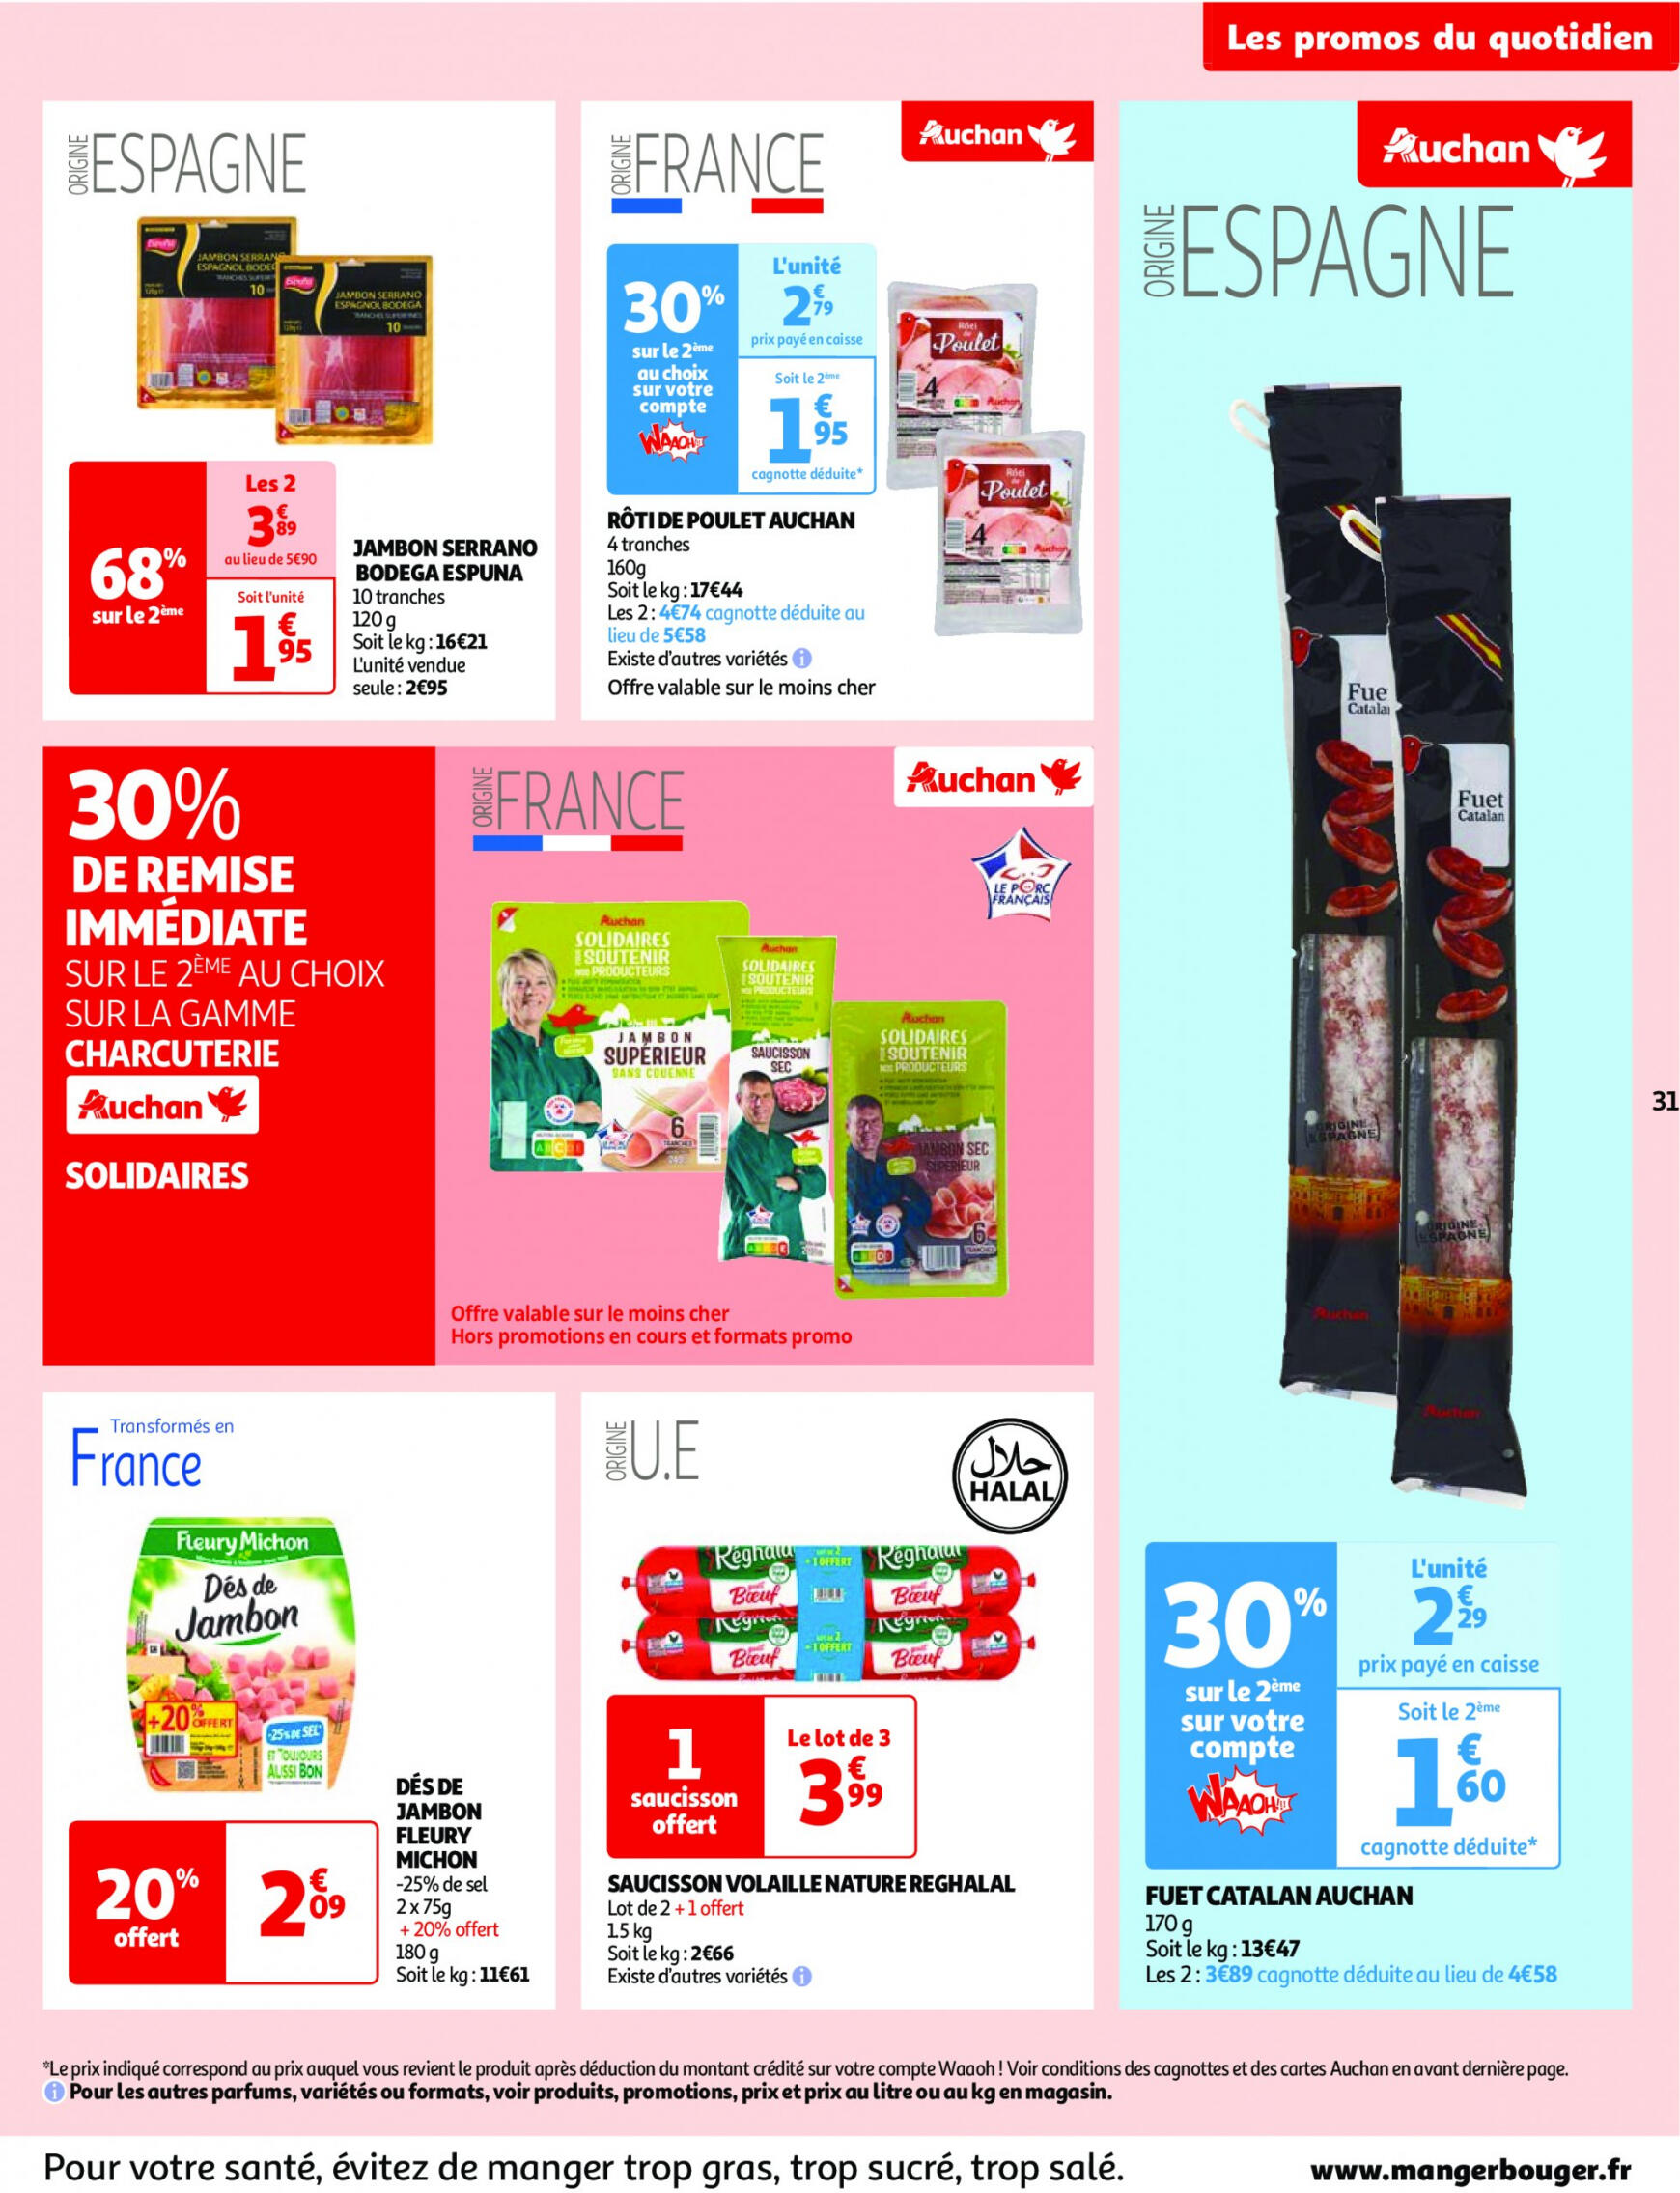 auchan - Prospectus Auchan actuel 14.05. - 21.05. - page: 31